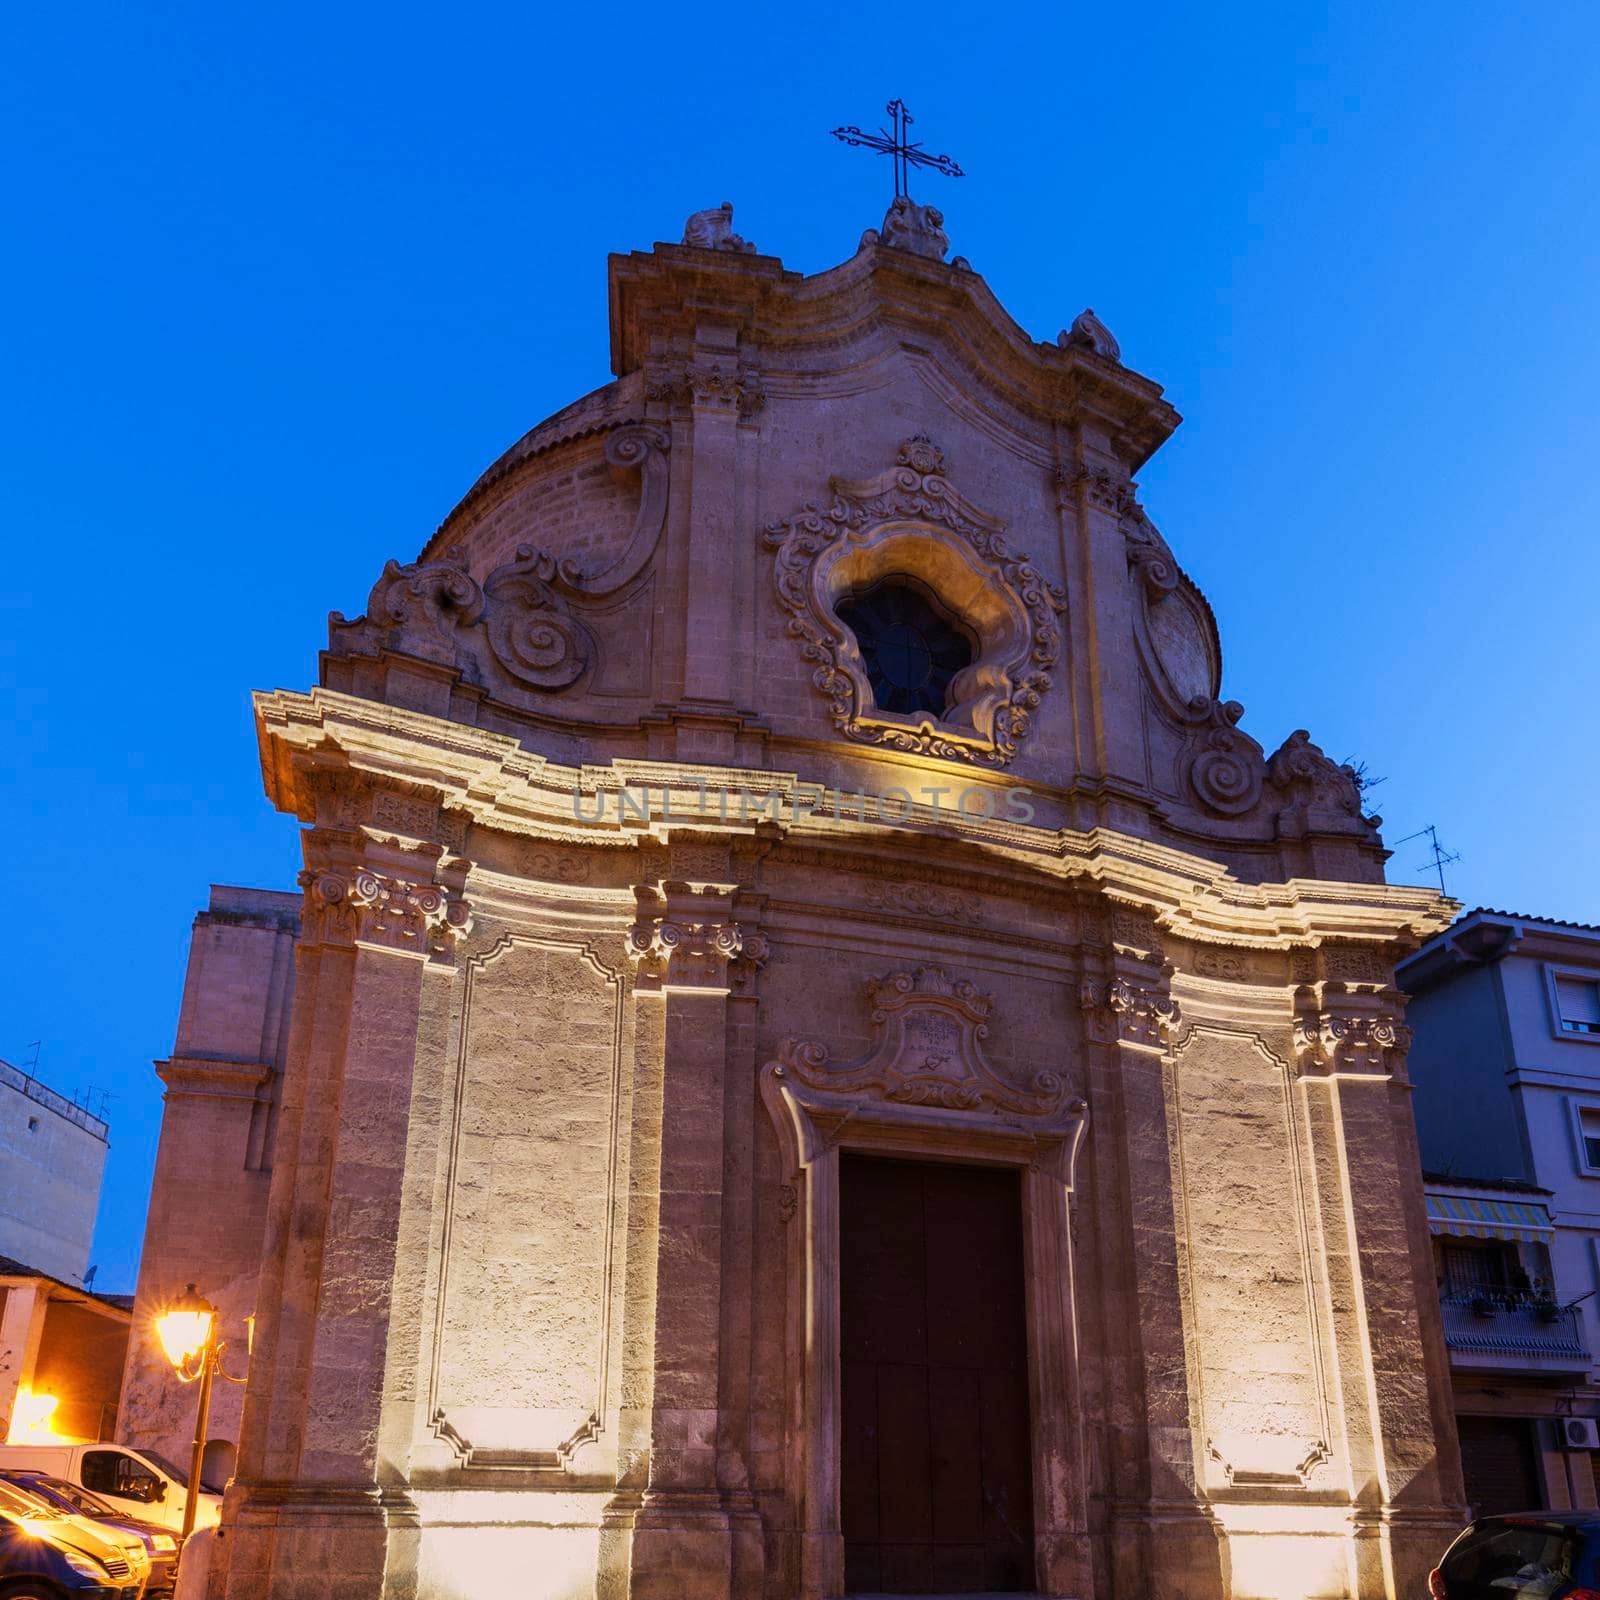 Chiesa dell'Addolorata in the center of Foggia by benkrut